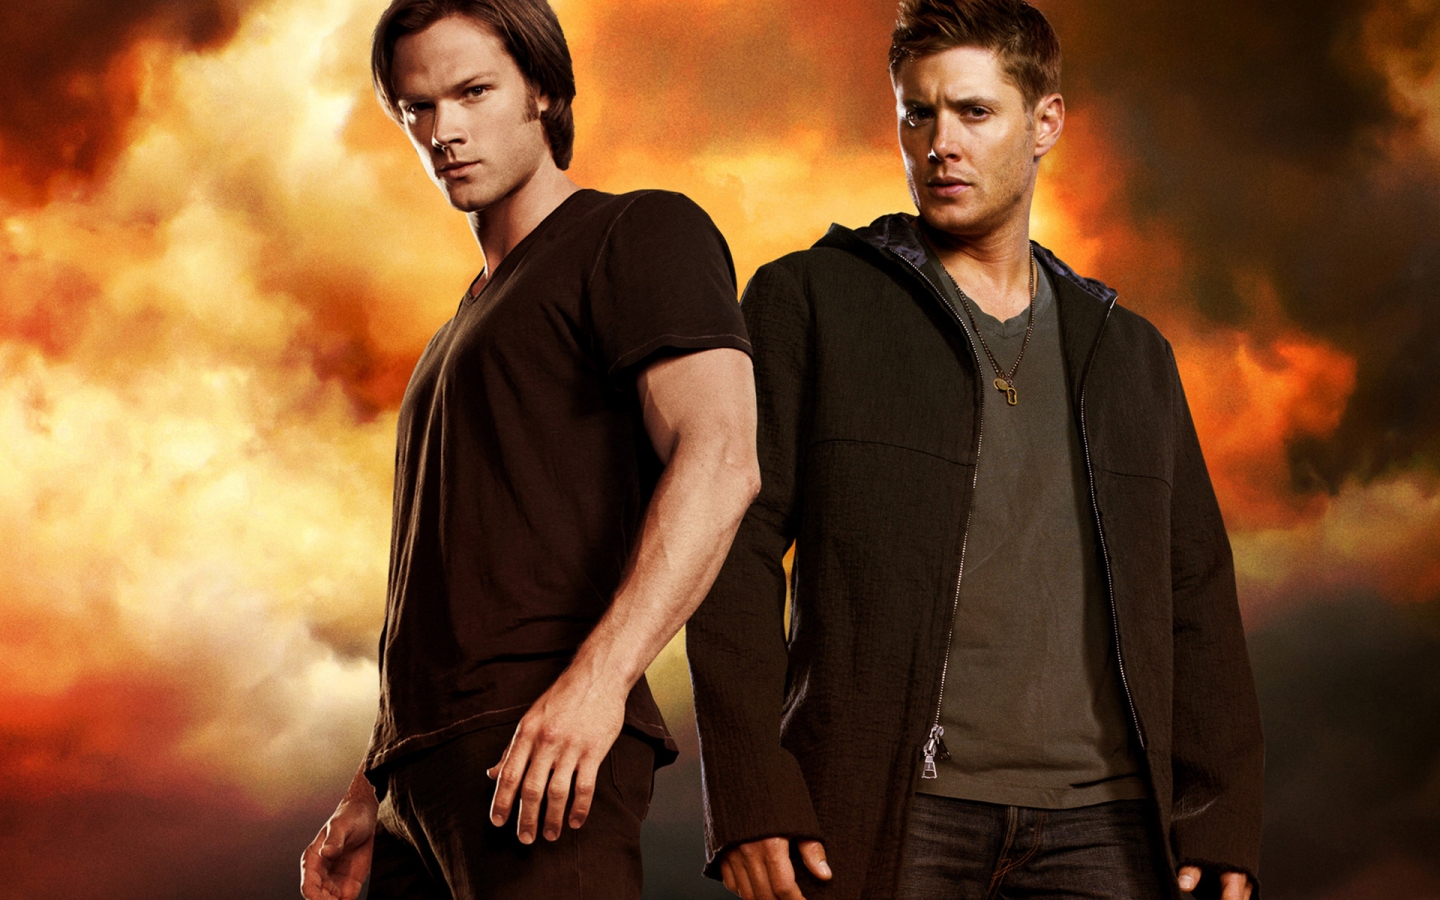 Supernatural Dean & Sam for 1440 x 900 widescreen resolution